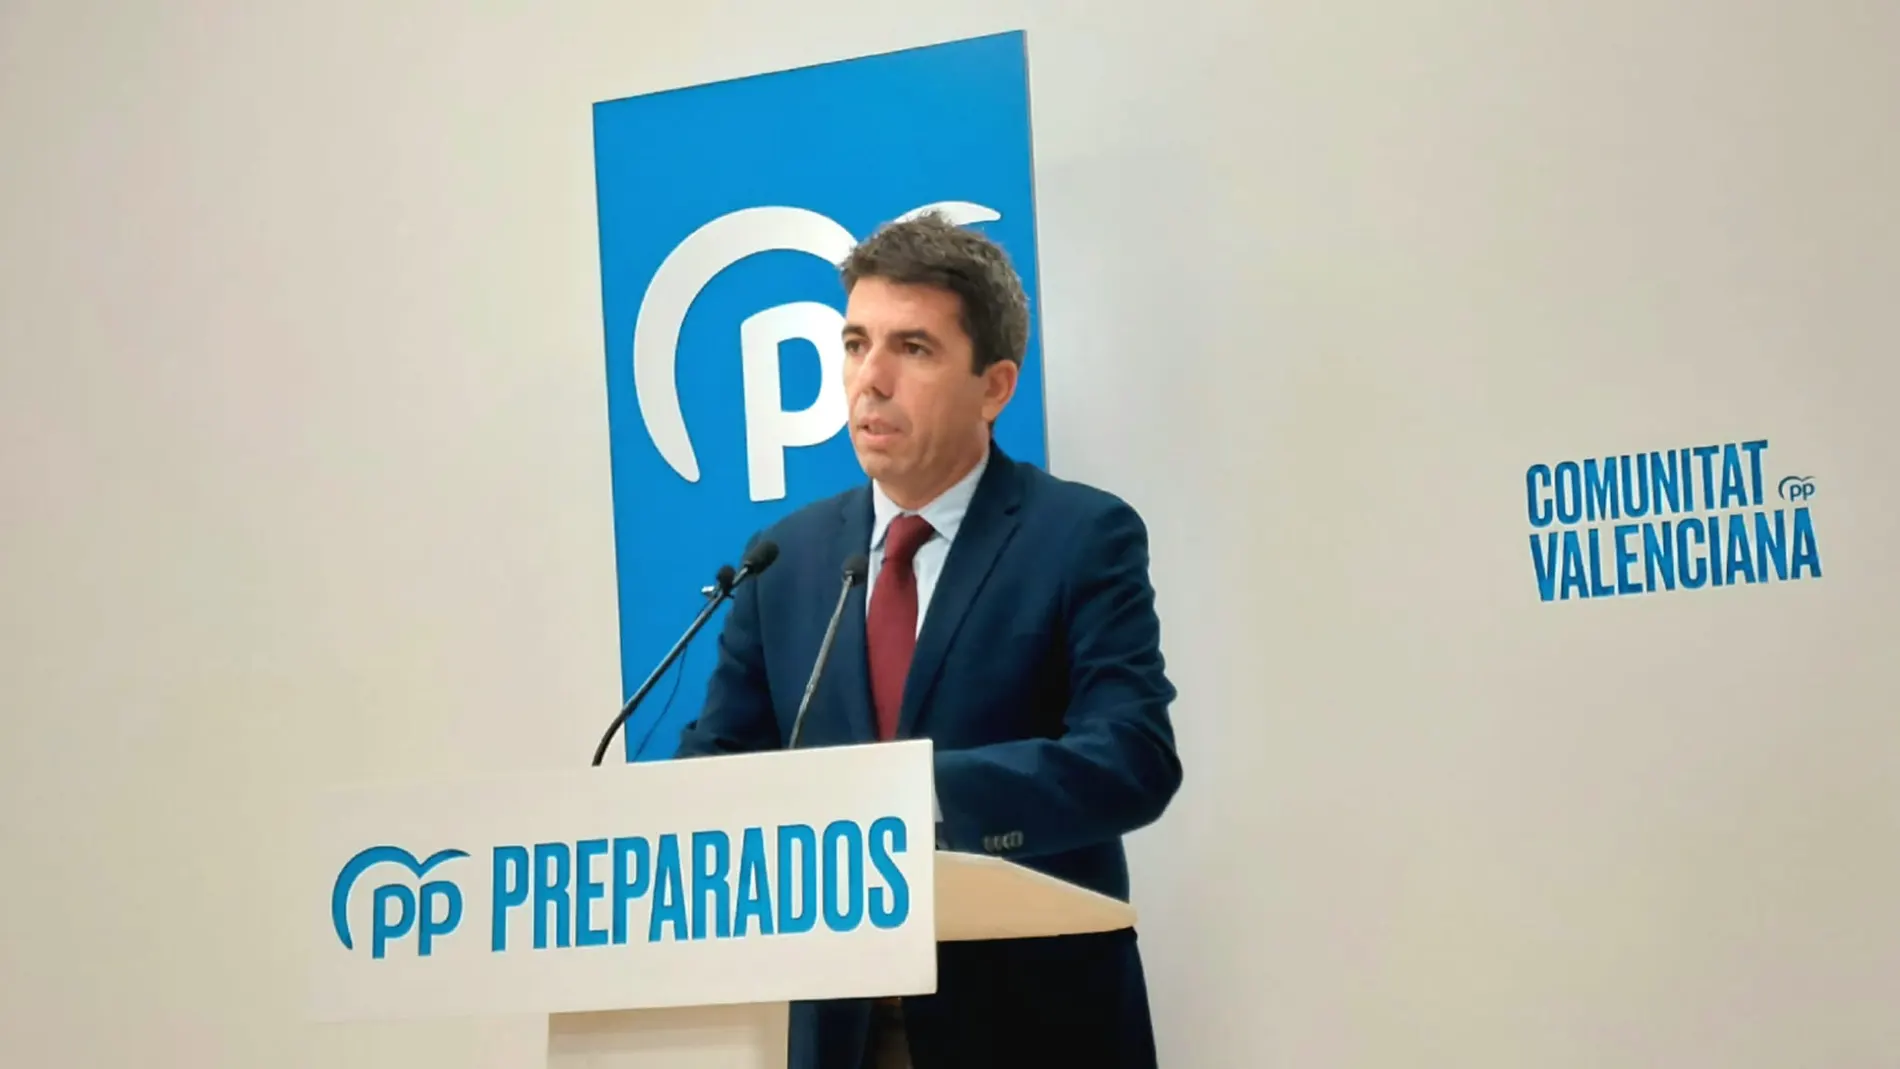 El presidente del PP de la Comunidad Valenciana, Carlos Mazón